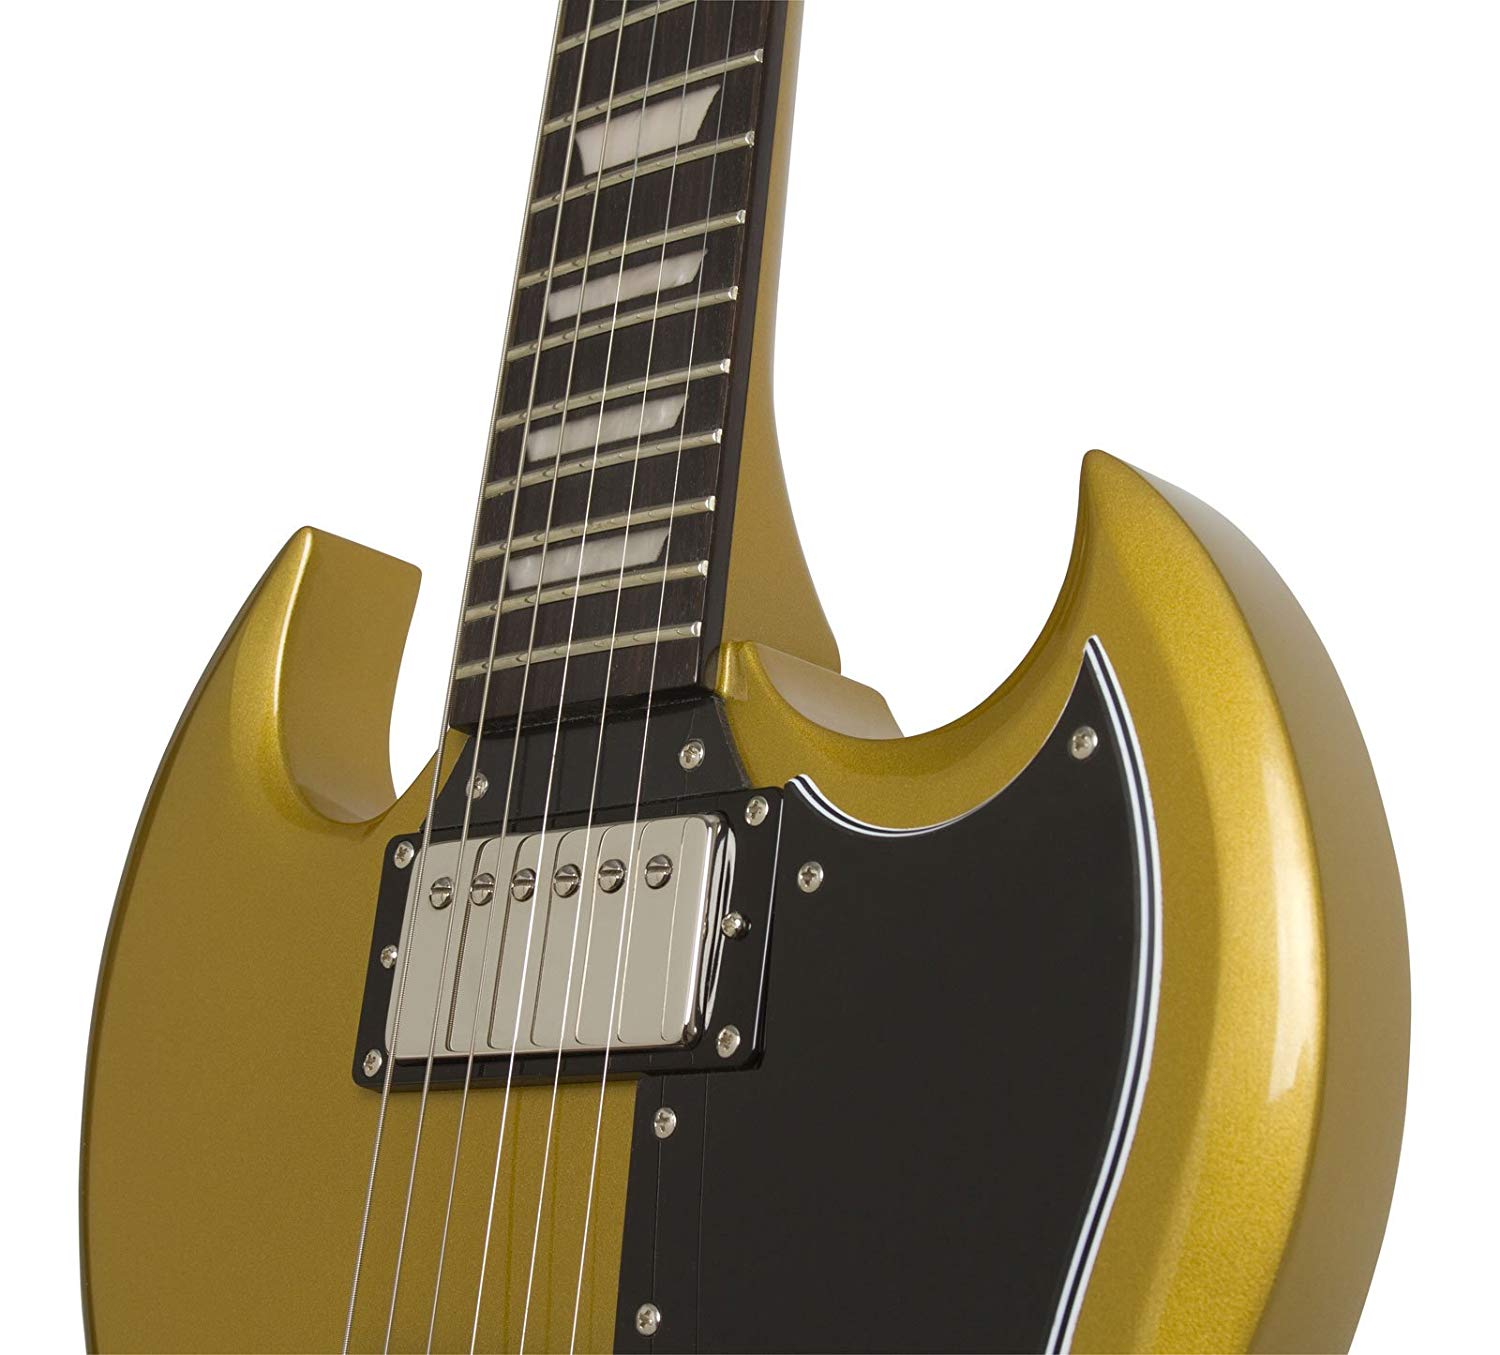 Epiphone G-400 Pro 1961 Ltd 2018 Hh Ht Pf - Metallic Gold - Guitarra eléctrica de doble corte. - Variation 2